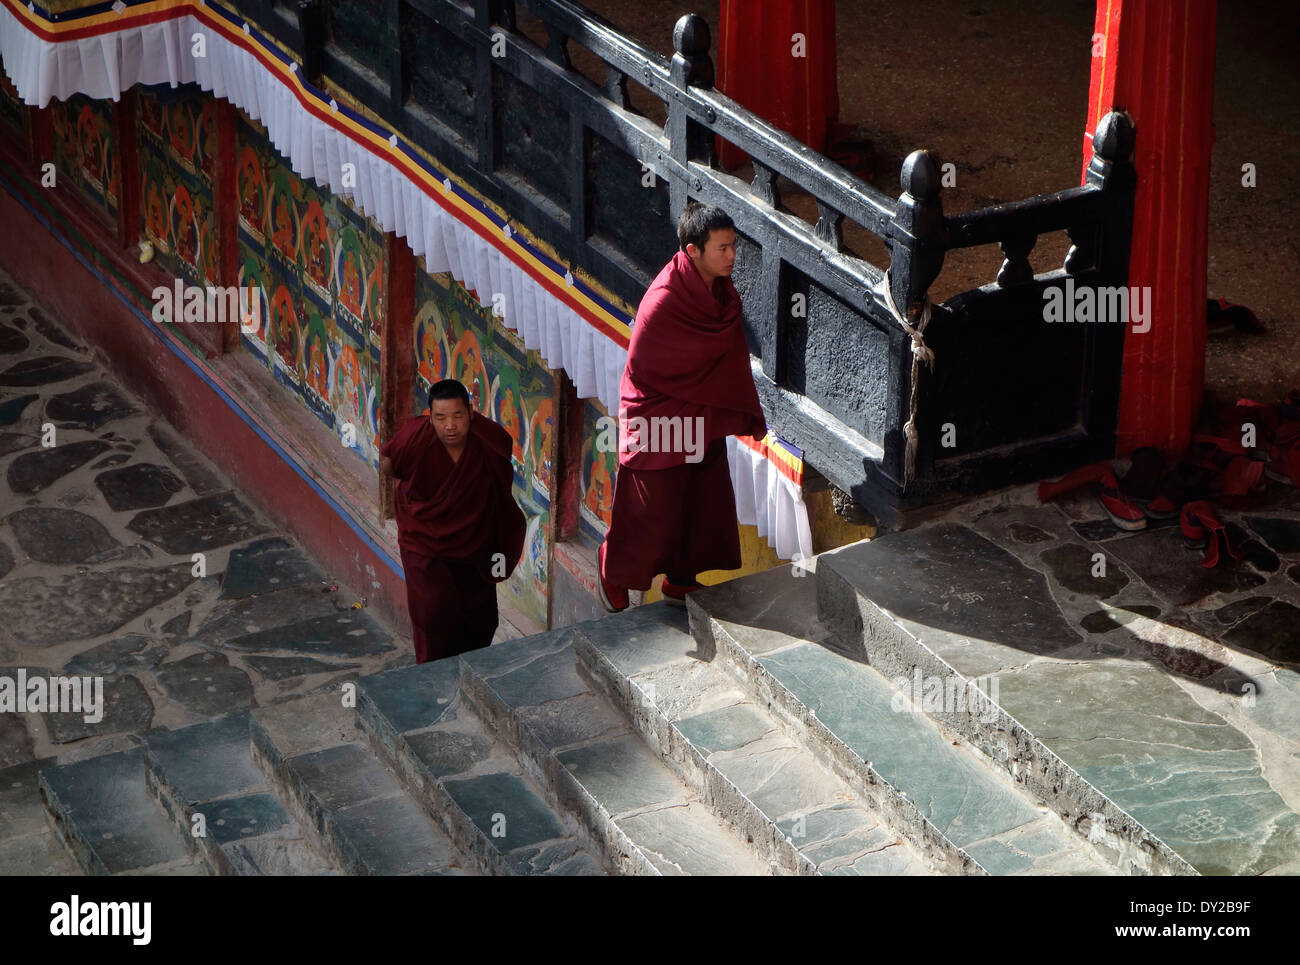 Zwei Mönche auf Treppe im Kloster, Candid Straßenfotografie, Leben der buddhistischen Hingabe Stockfoto